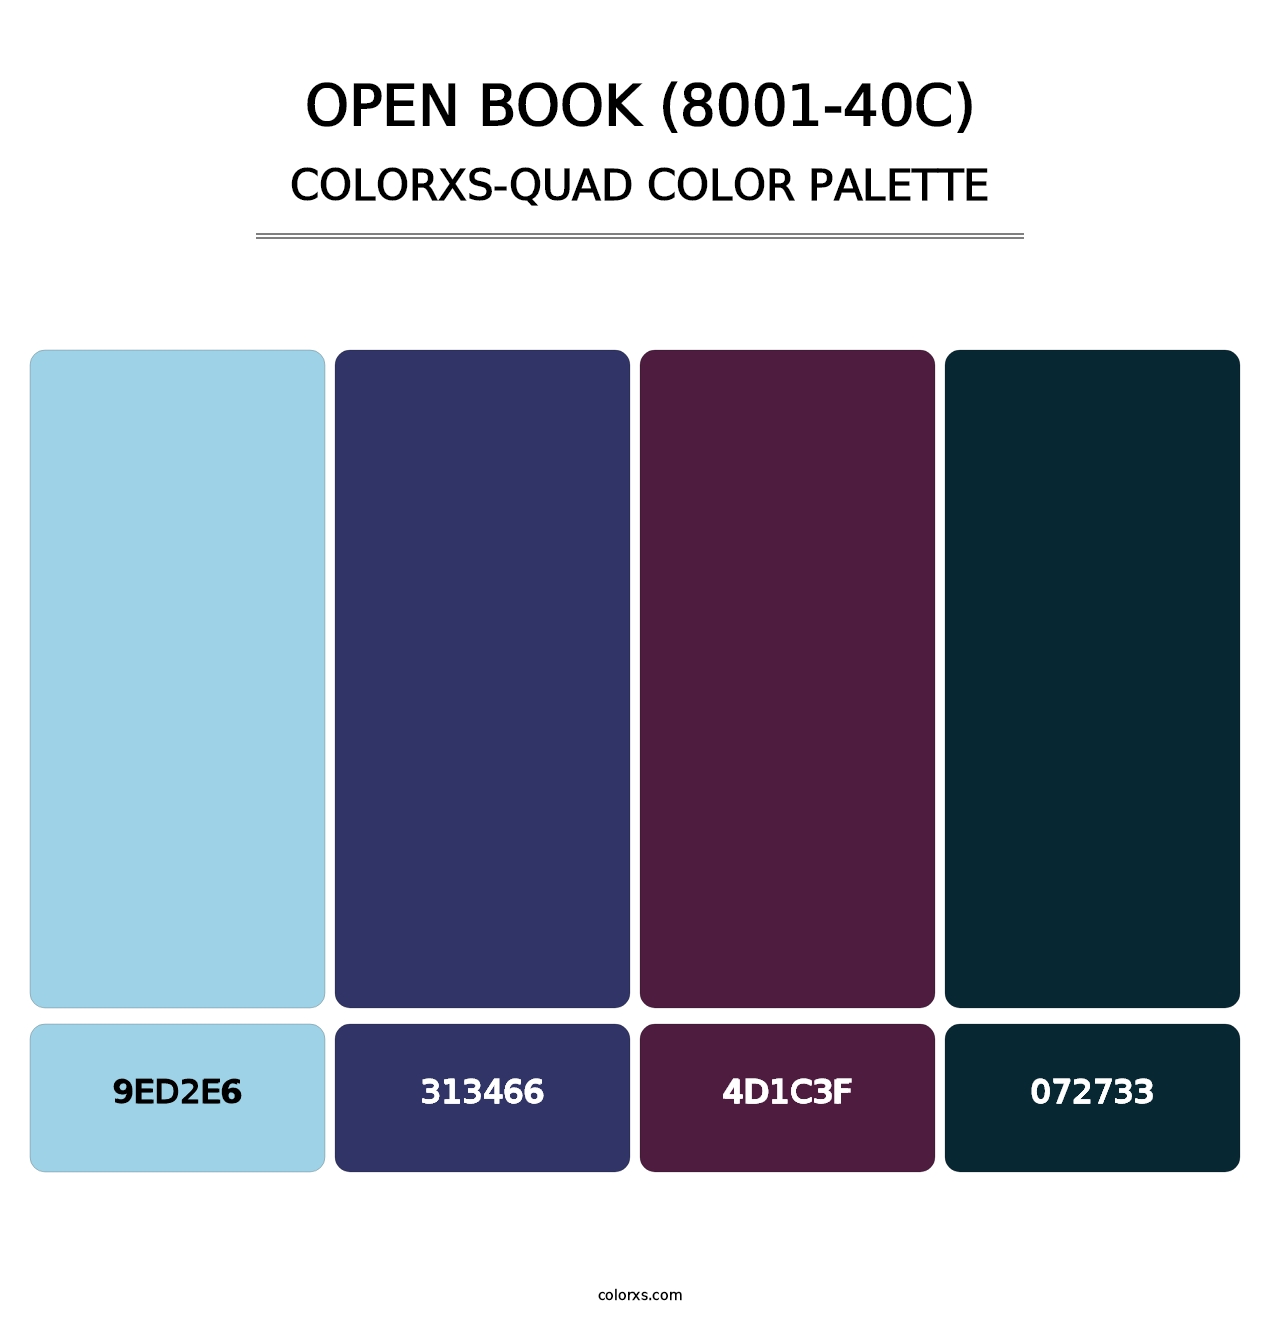 Open Book (8001-40C) - Colorxs Quad Palette